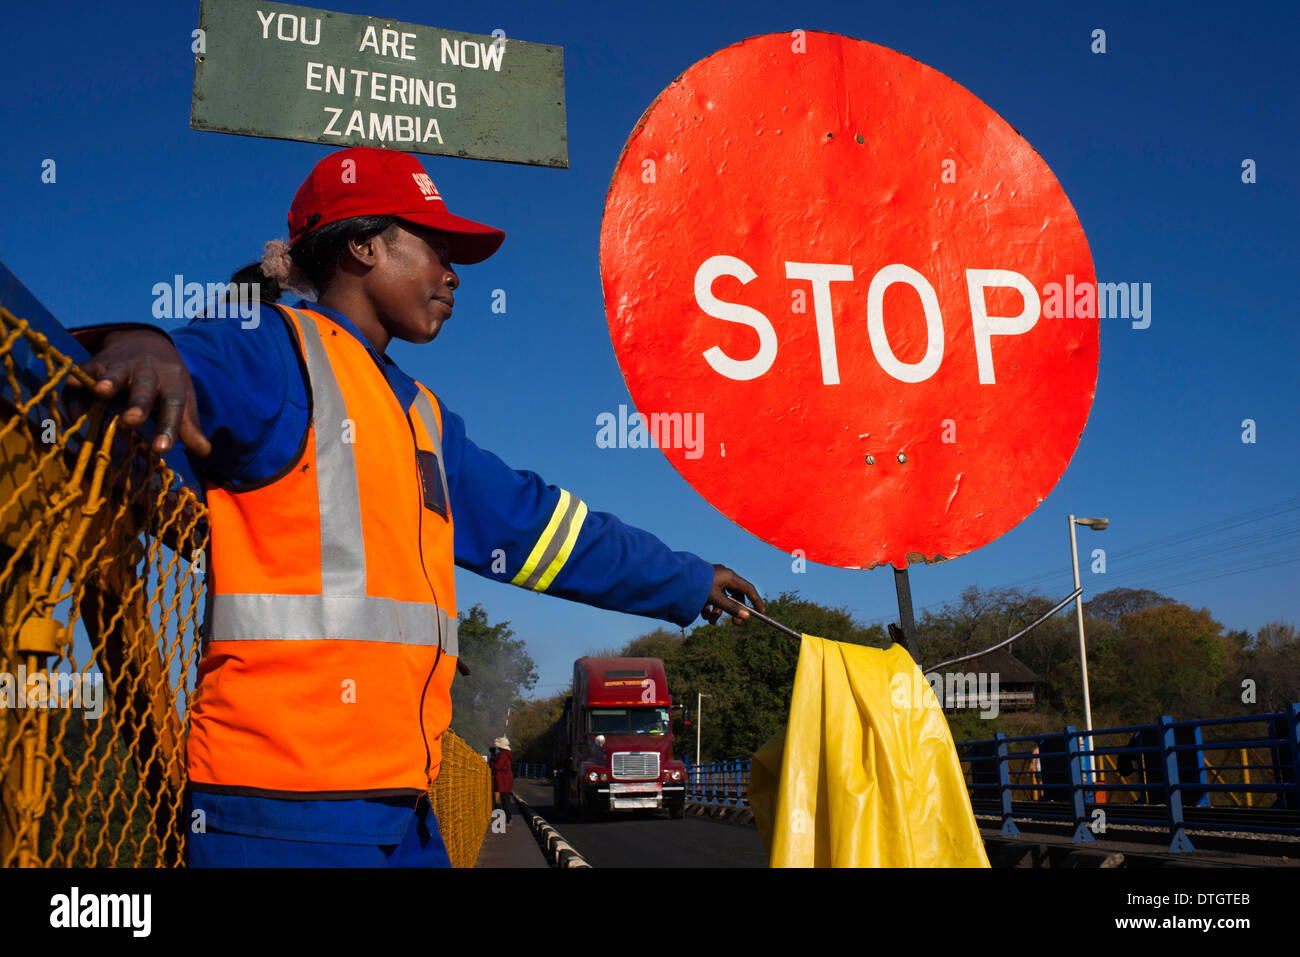 Una donna controlla il traffico tra Zambia e Zimbabwe. Un simbolo di arresto indica che stiamo entrando in Zambia. Foto Stock